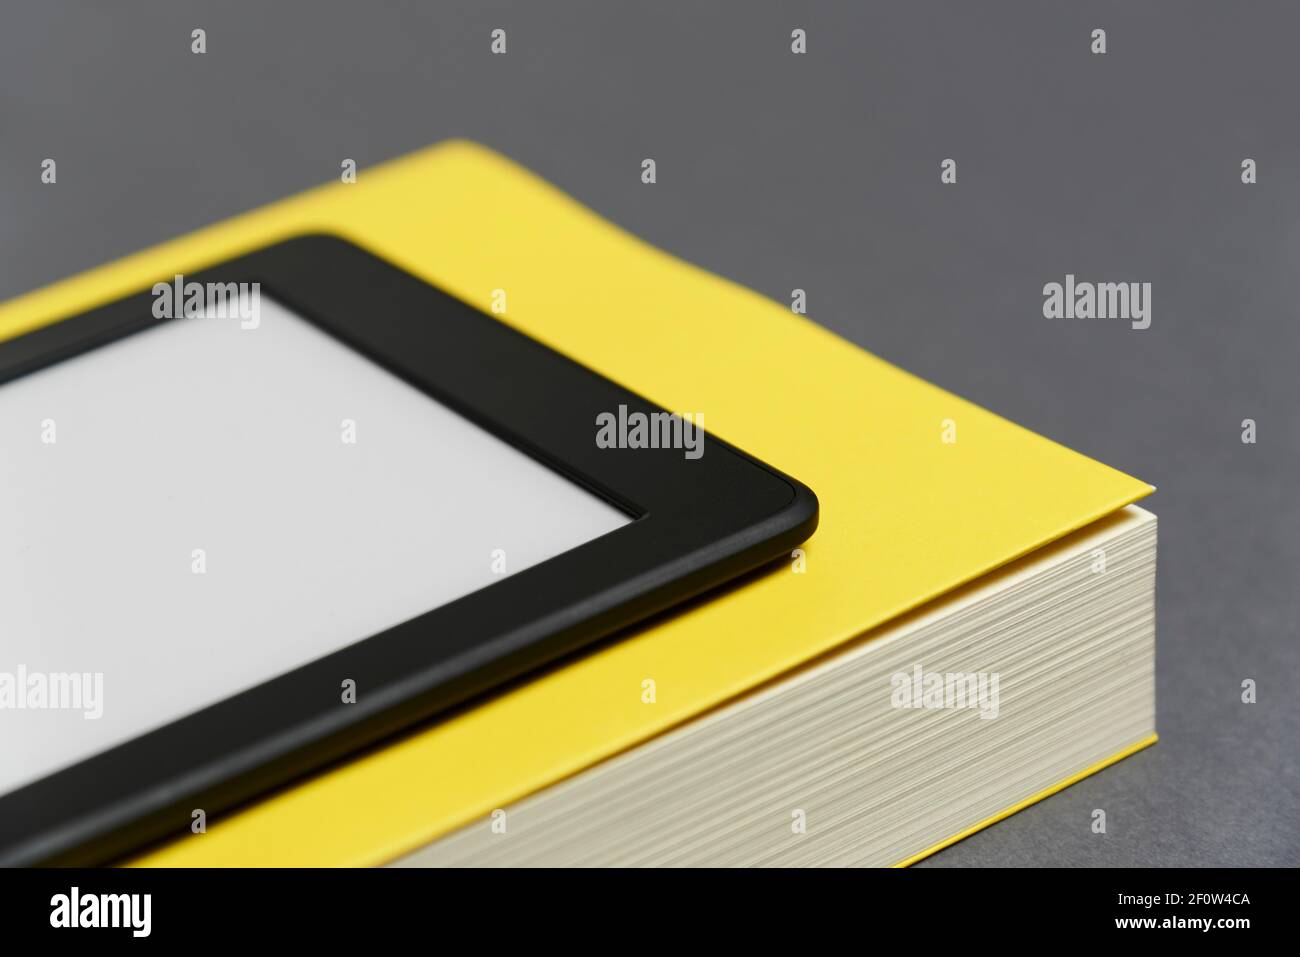 Elektronisches Lesegerät mit leerem Bildschirm und geschlossenem gelben Buch auf grauem Hintergrund. Konzepte der Technik und des Lesens. Bild mit Kopierbereich. Stockfoto